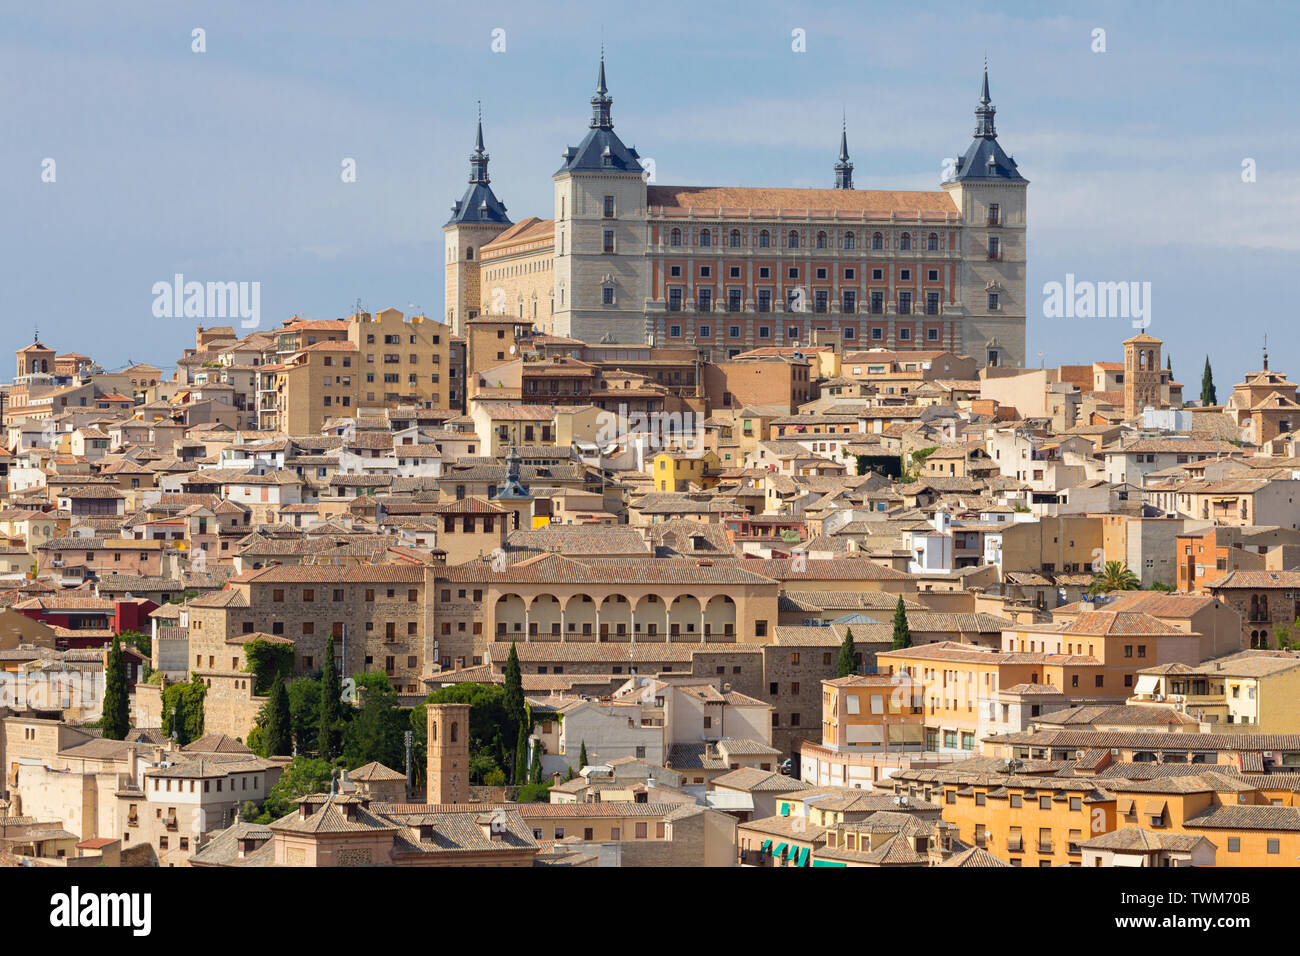 Das Alcazar, die Provinz Toledo, Toledo, Kastilien-La Mancha Spanien. Toledo ist ein UNESCO-Weltkulturerbe. Stockfoto